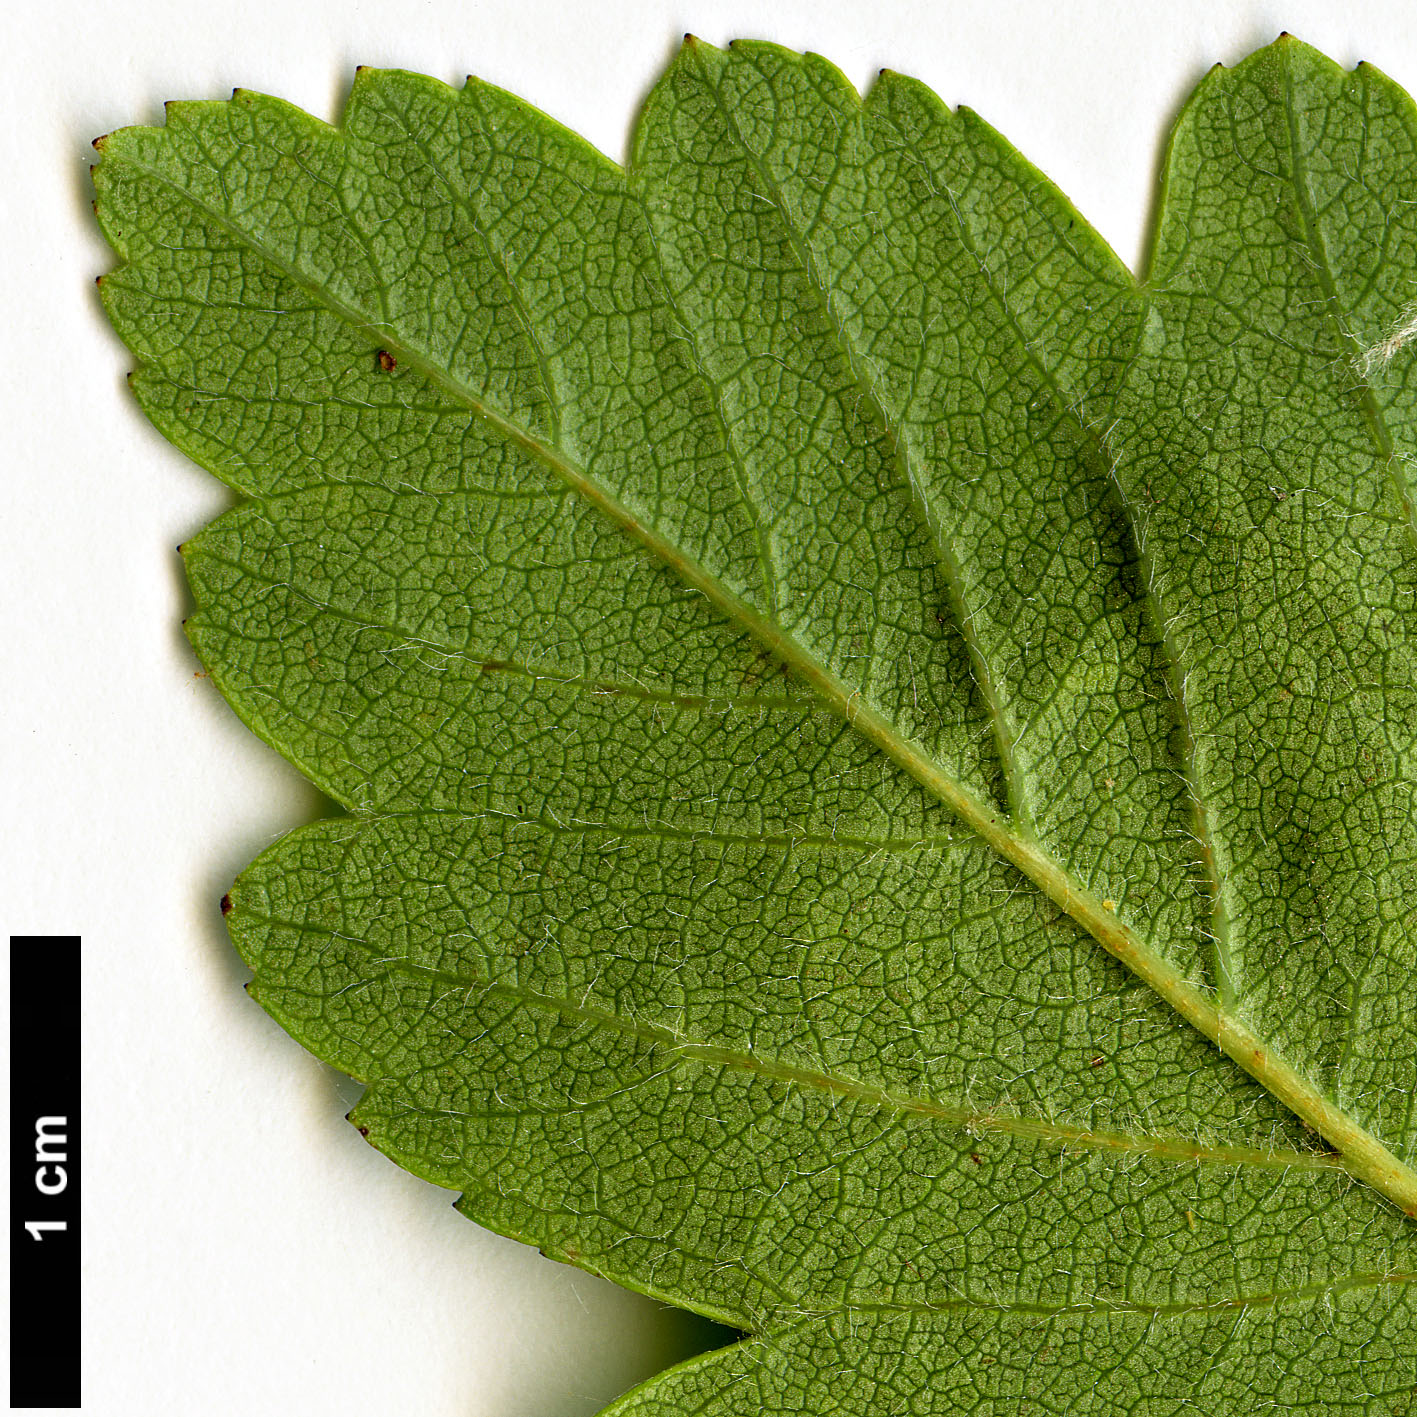 High resolution image: Family: Rosaceae - Genus: Crataegus - Taxon: sorbifolia